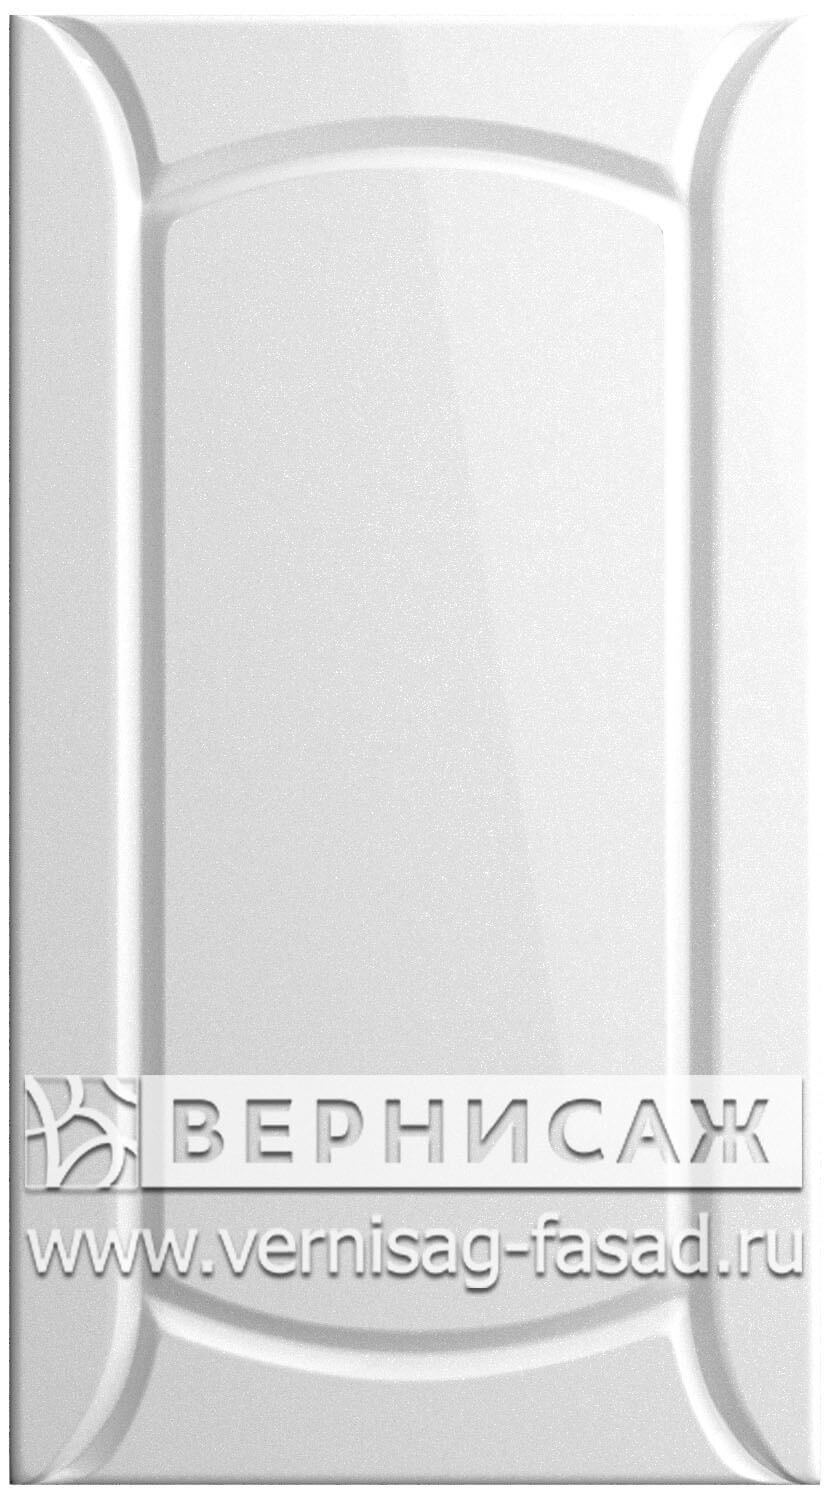  Фасады в пленке ПВХ, Фрезеровка № 42, цвет Белый металлик